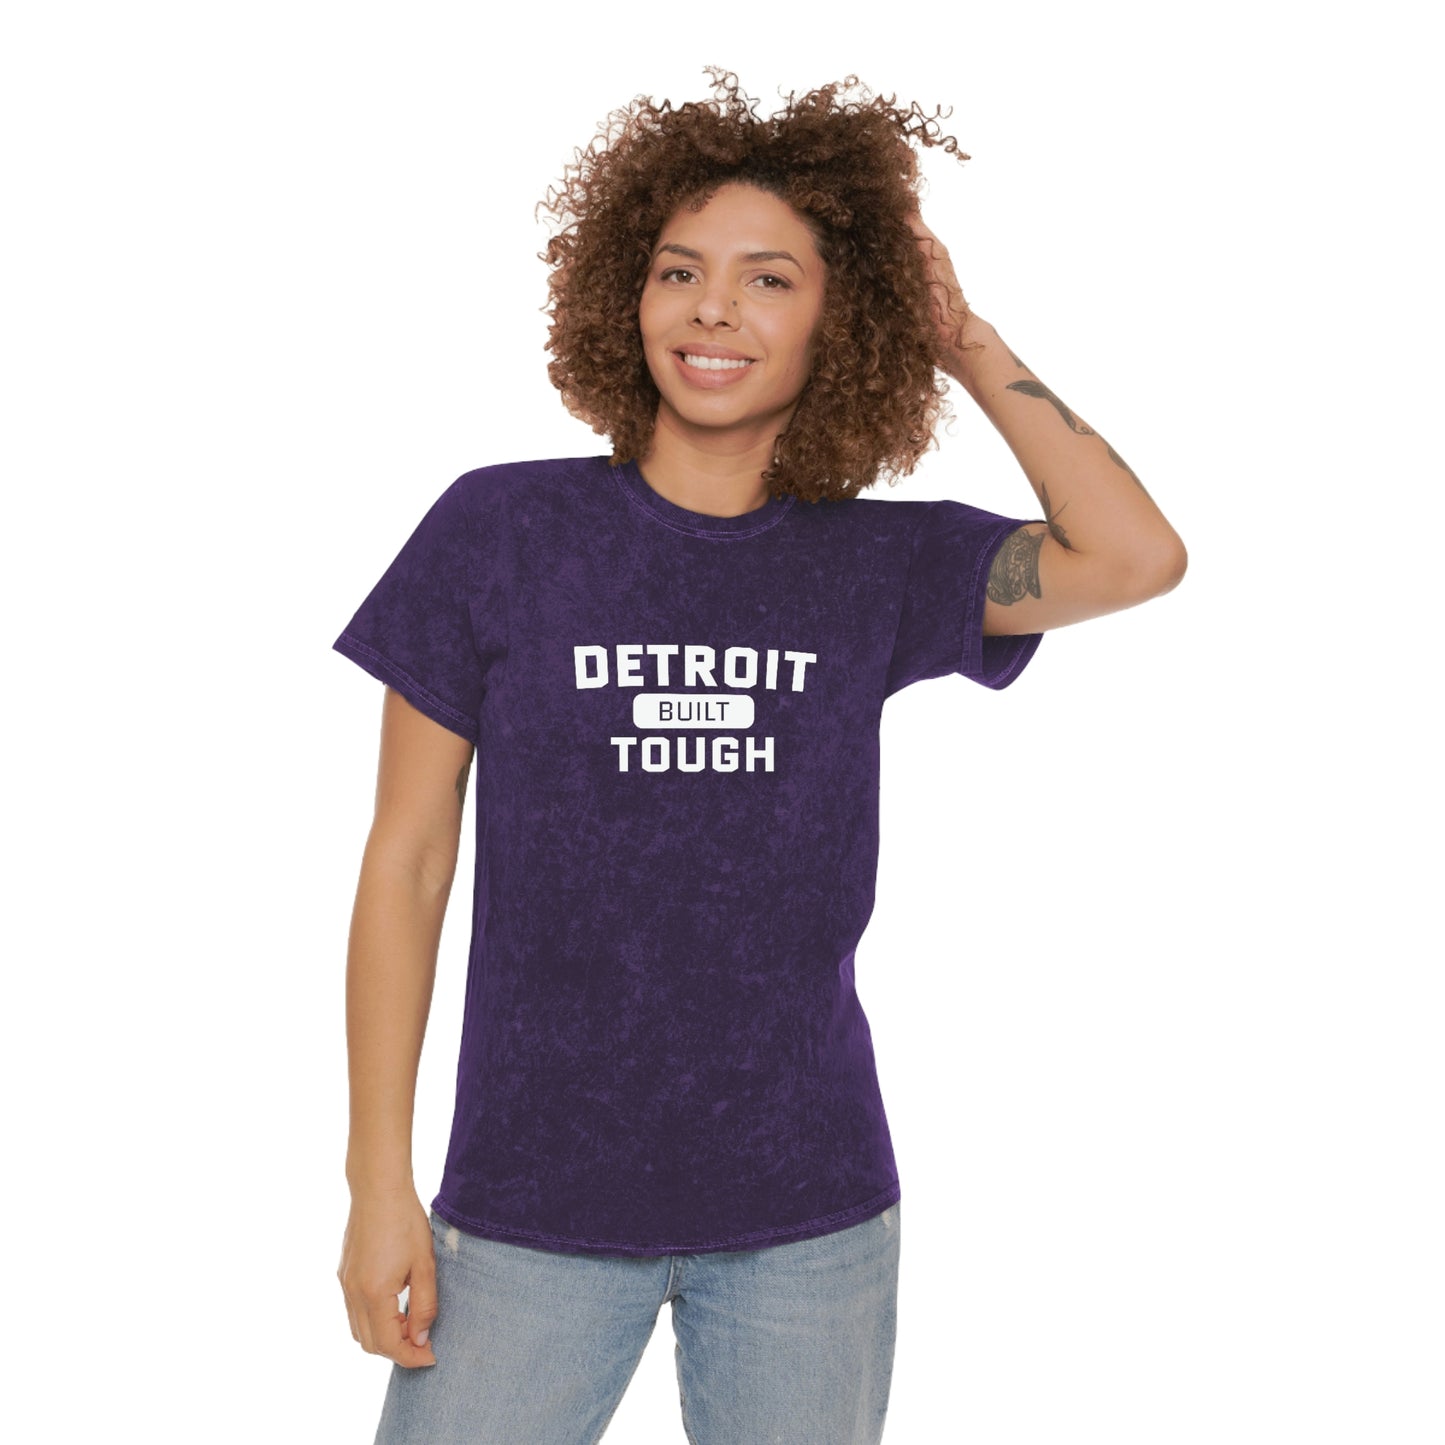 'Built Detroit Tough' Mineral Wash T-Shirt